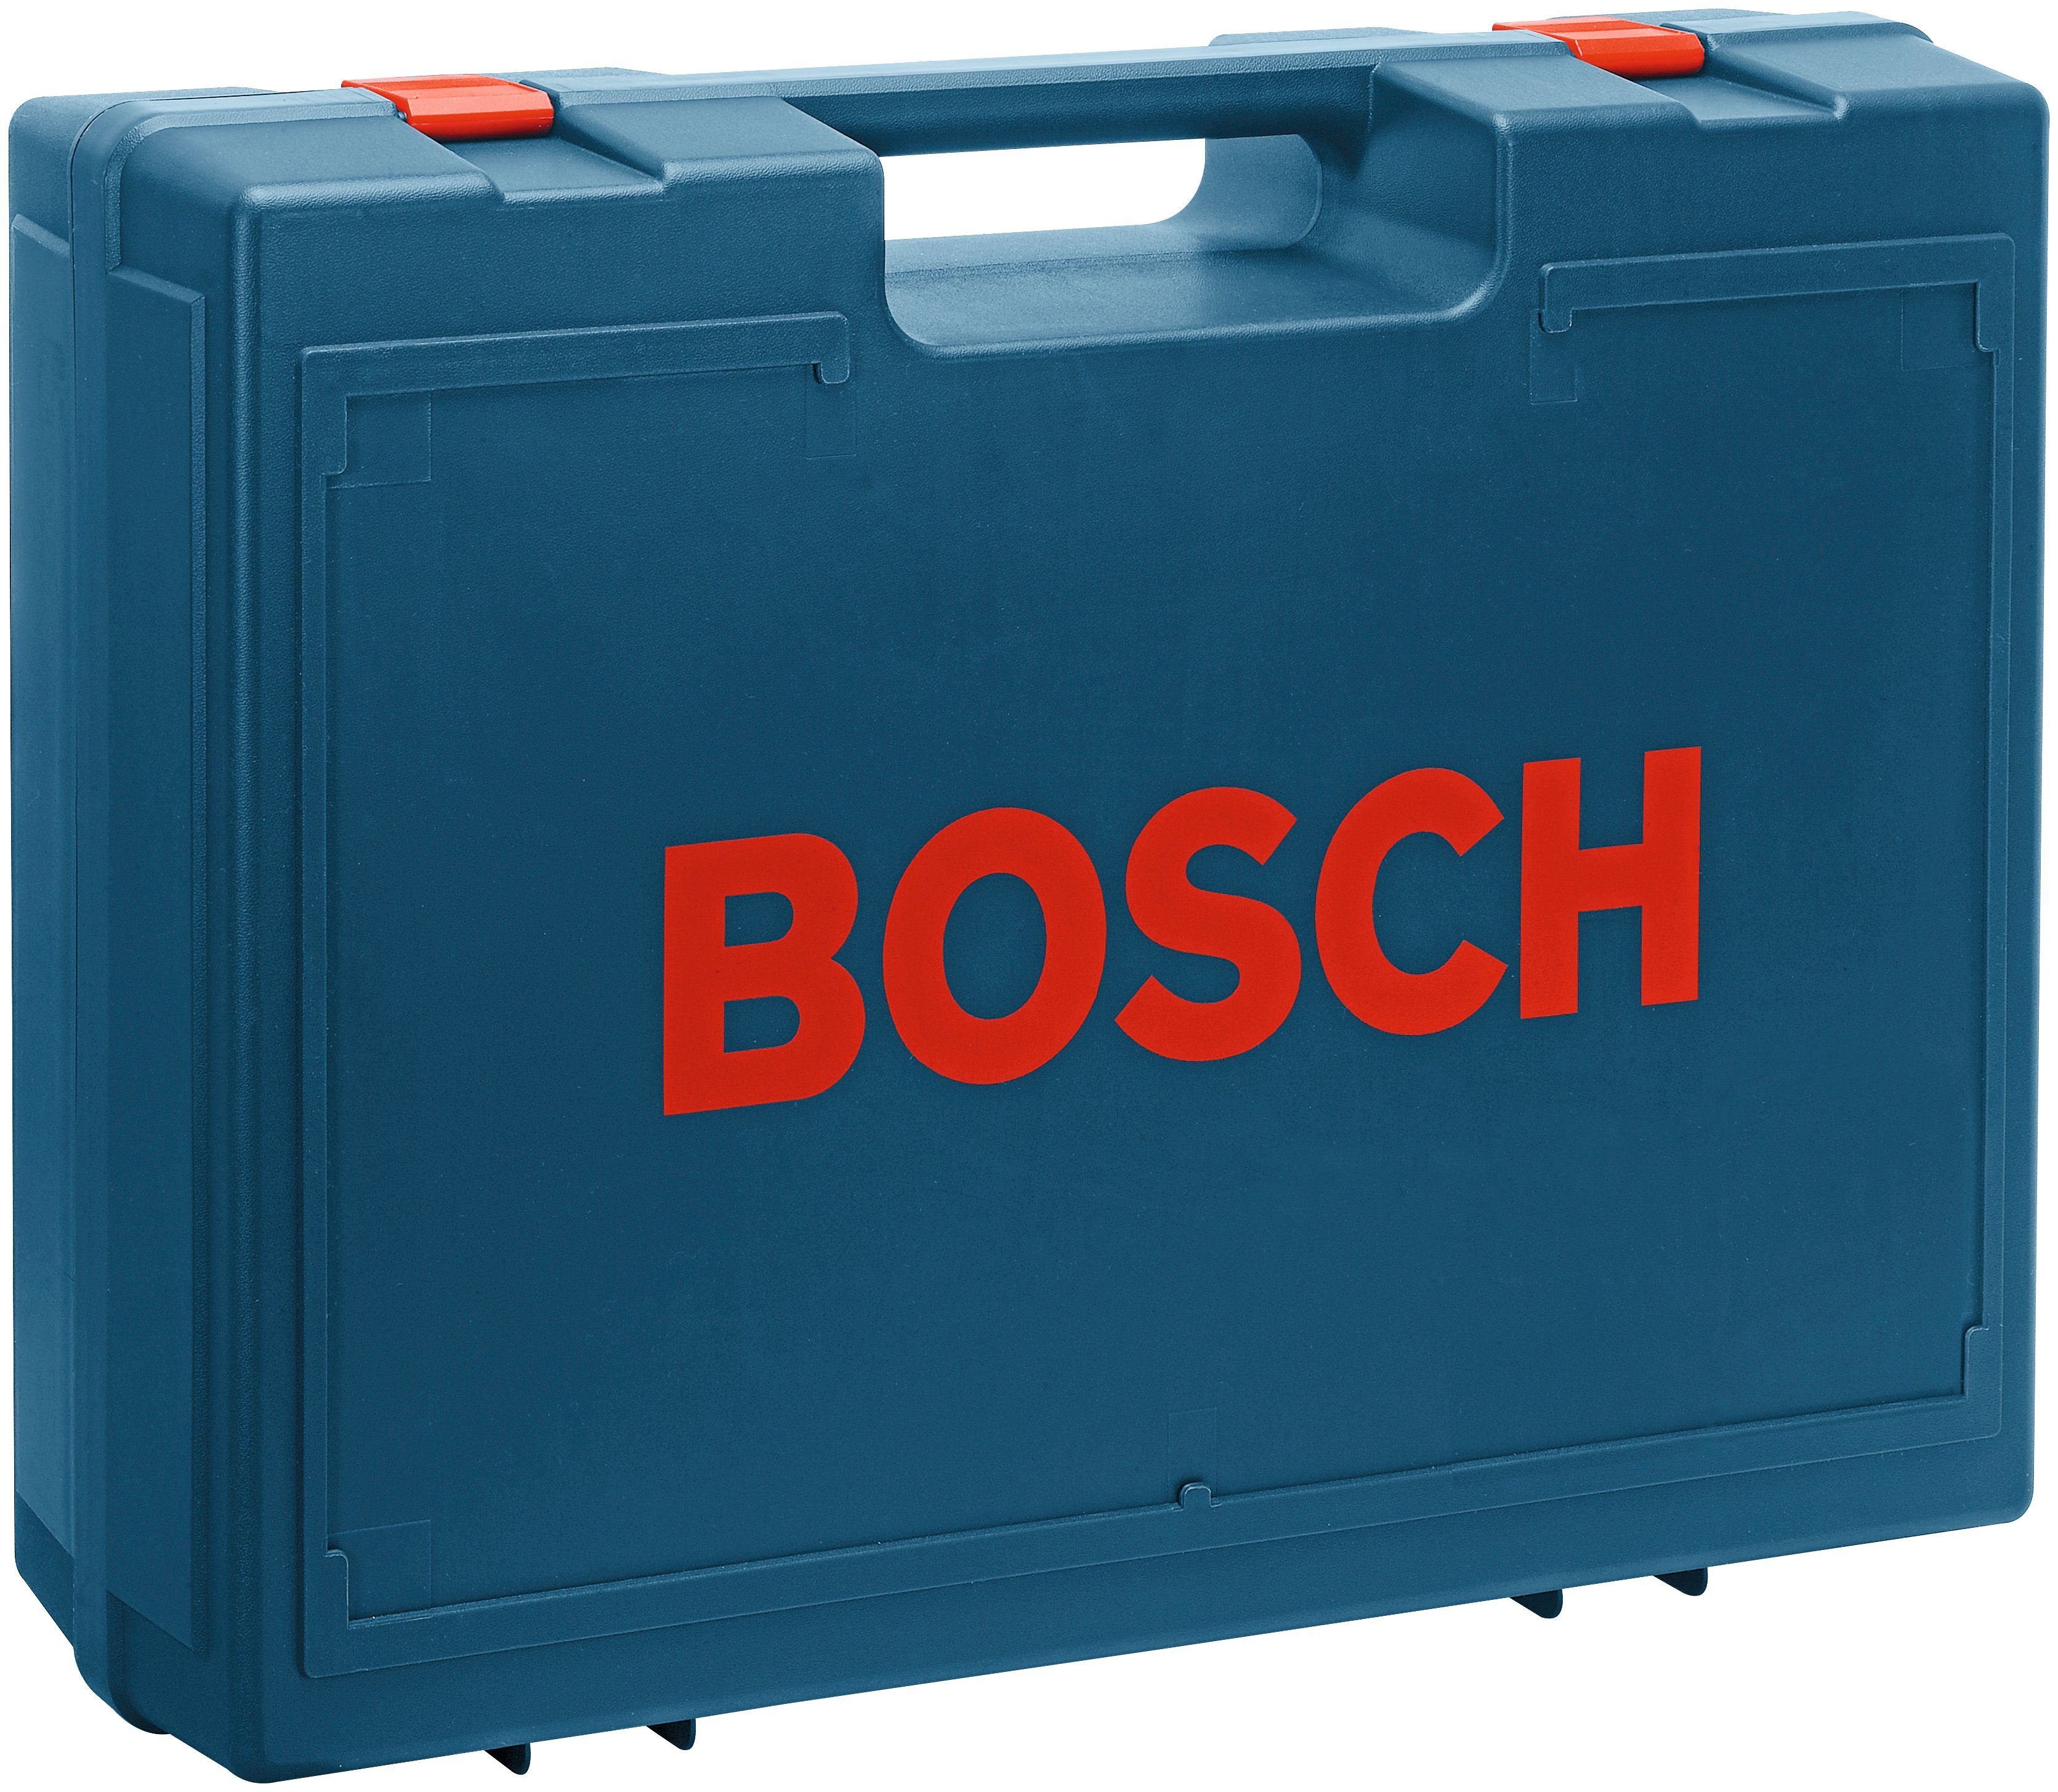 Bosch GEX 125-1 AE, U/min 24000 Professional Exzenterschleifer